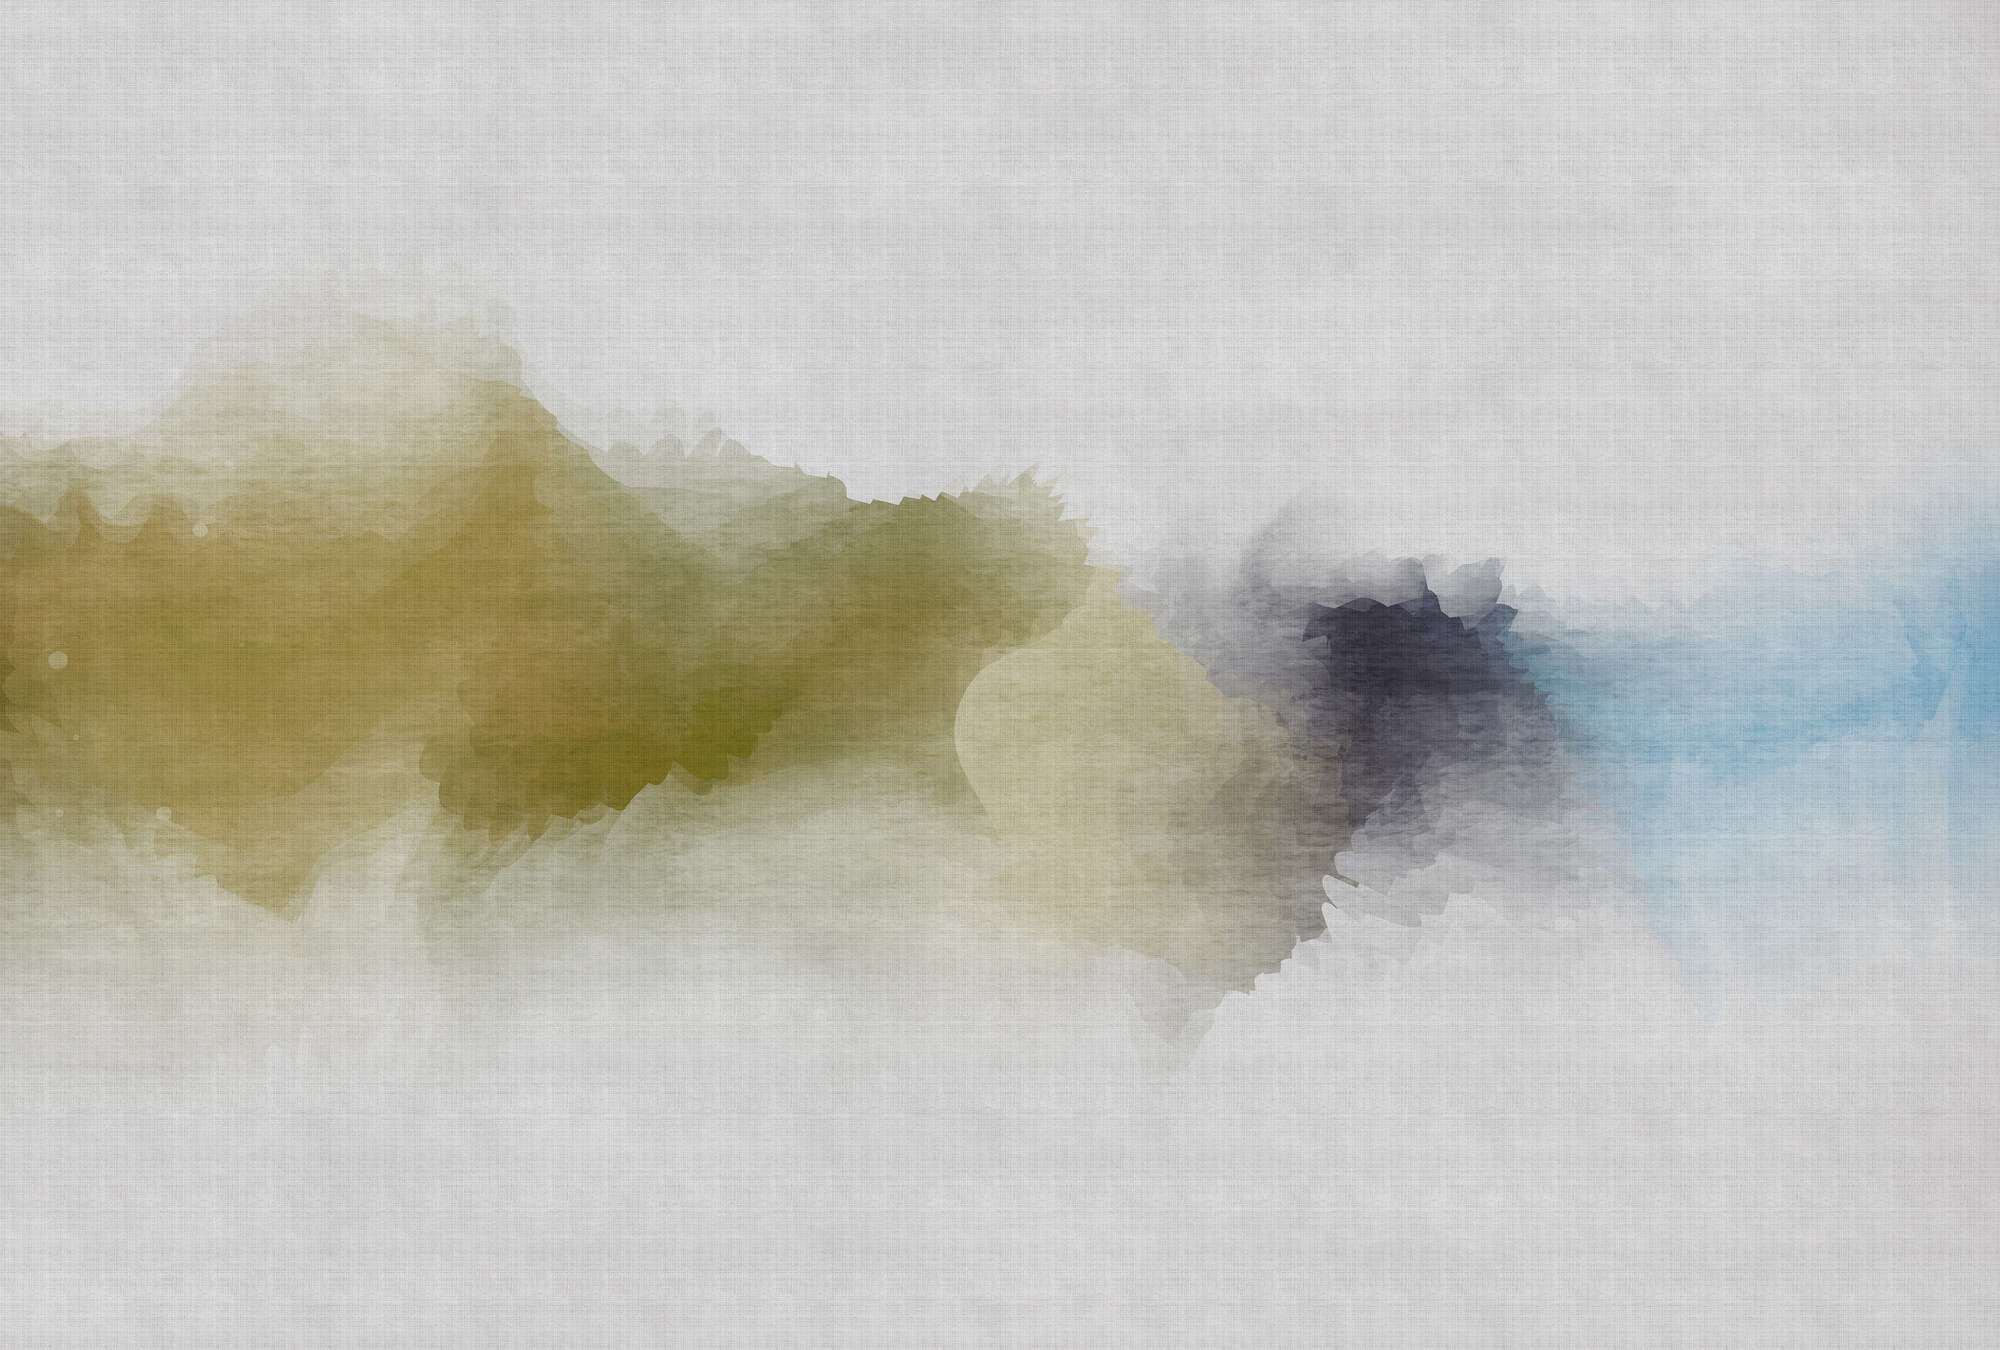             Daydream 3 - Photo wallpaper cloudy watercolour pattern- natural linen structure - Blue, Yellow | Matt smooth fleece
        